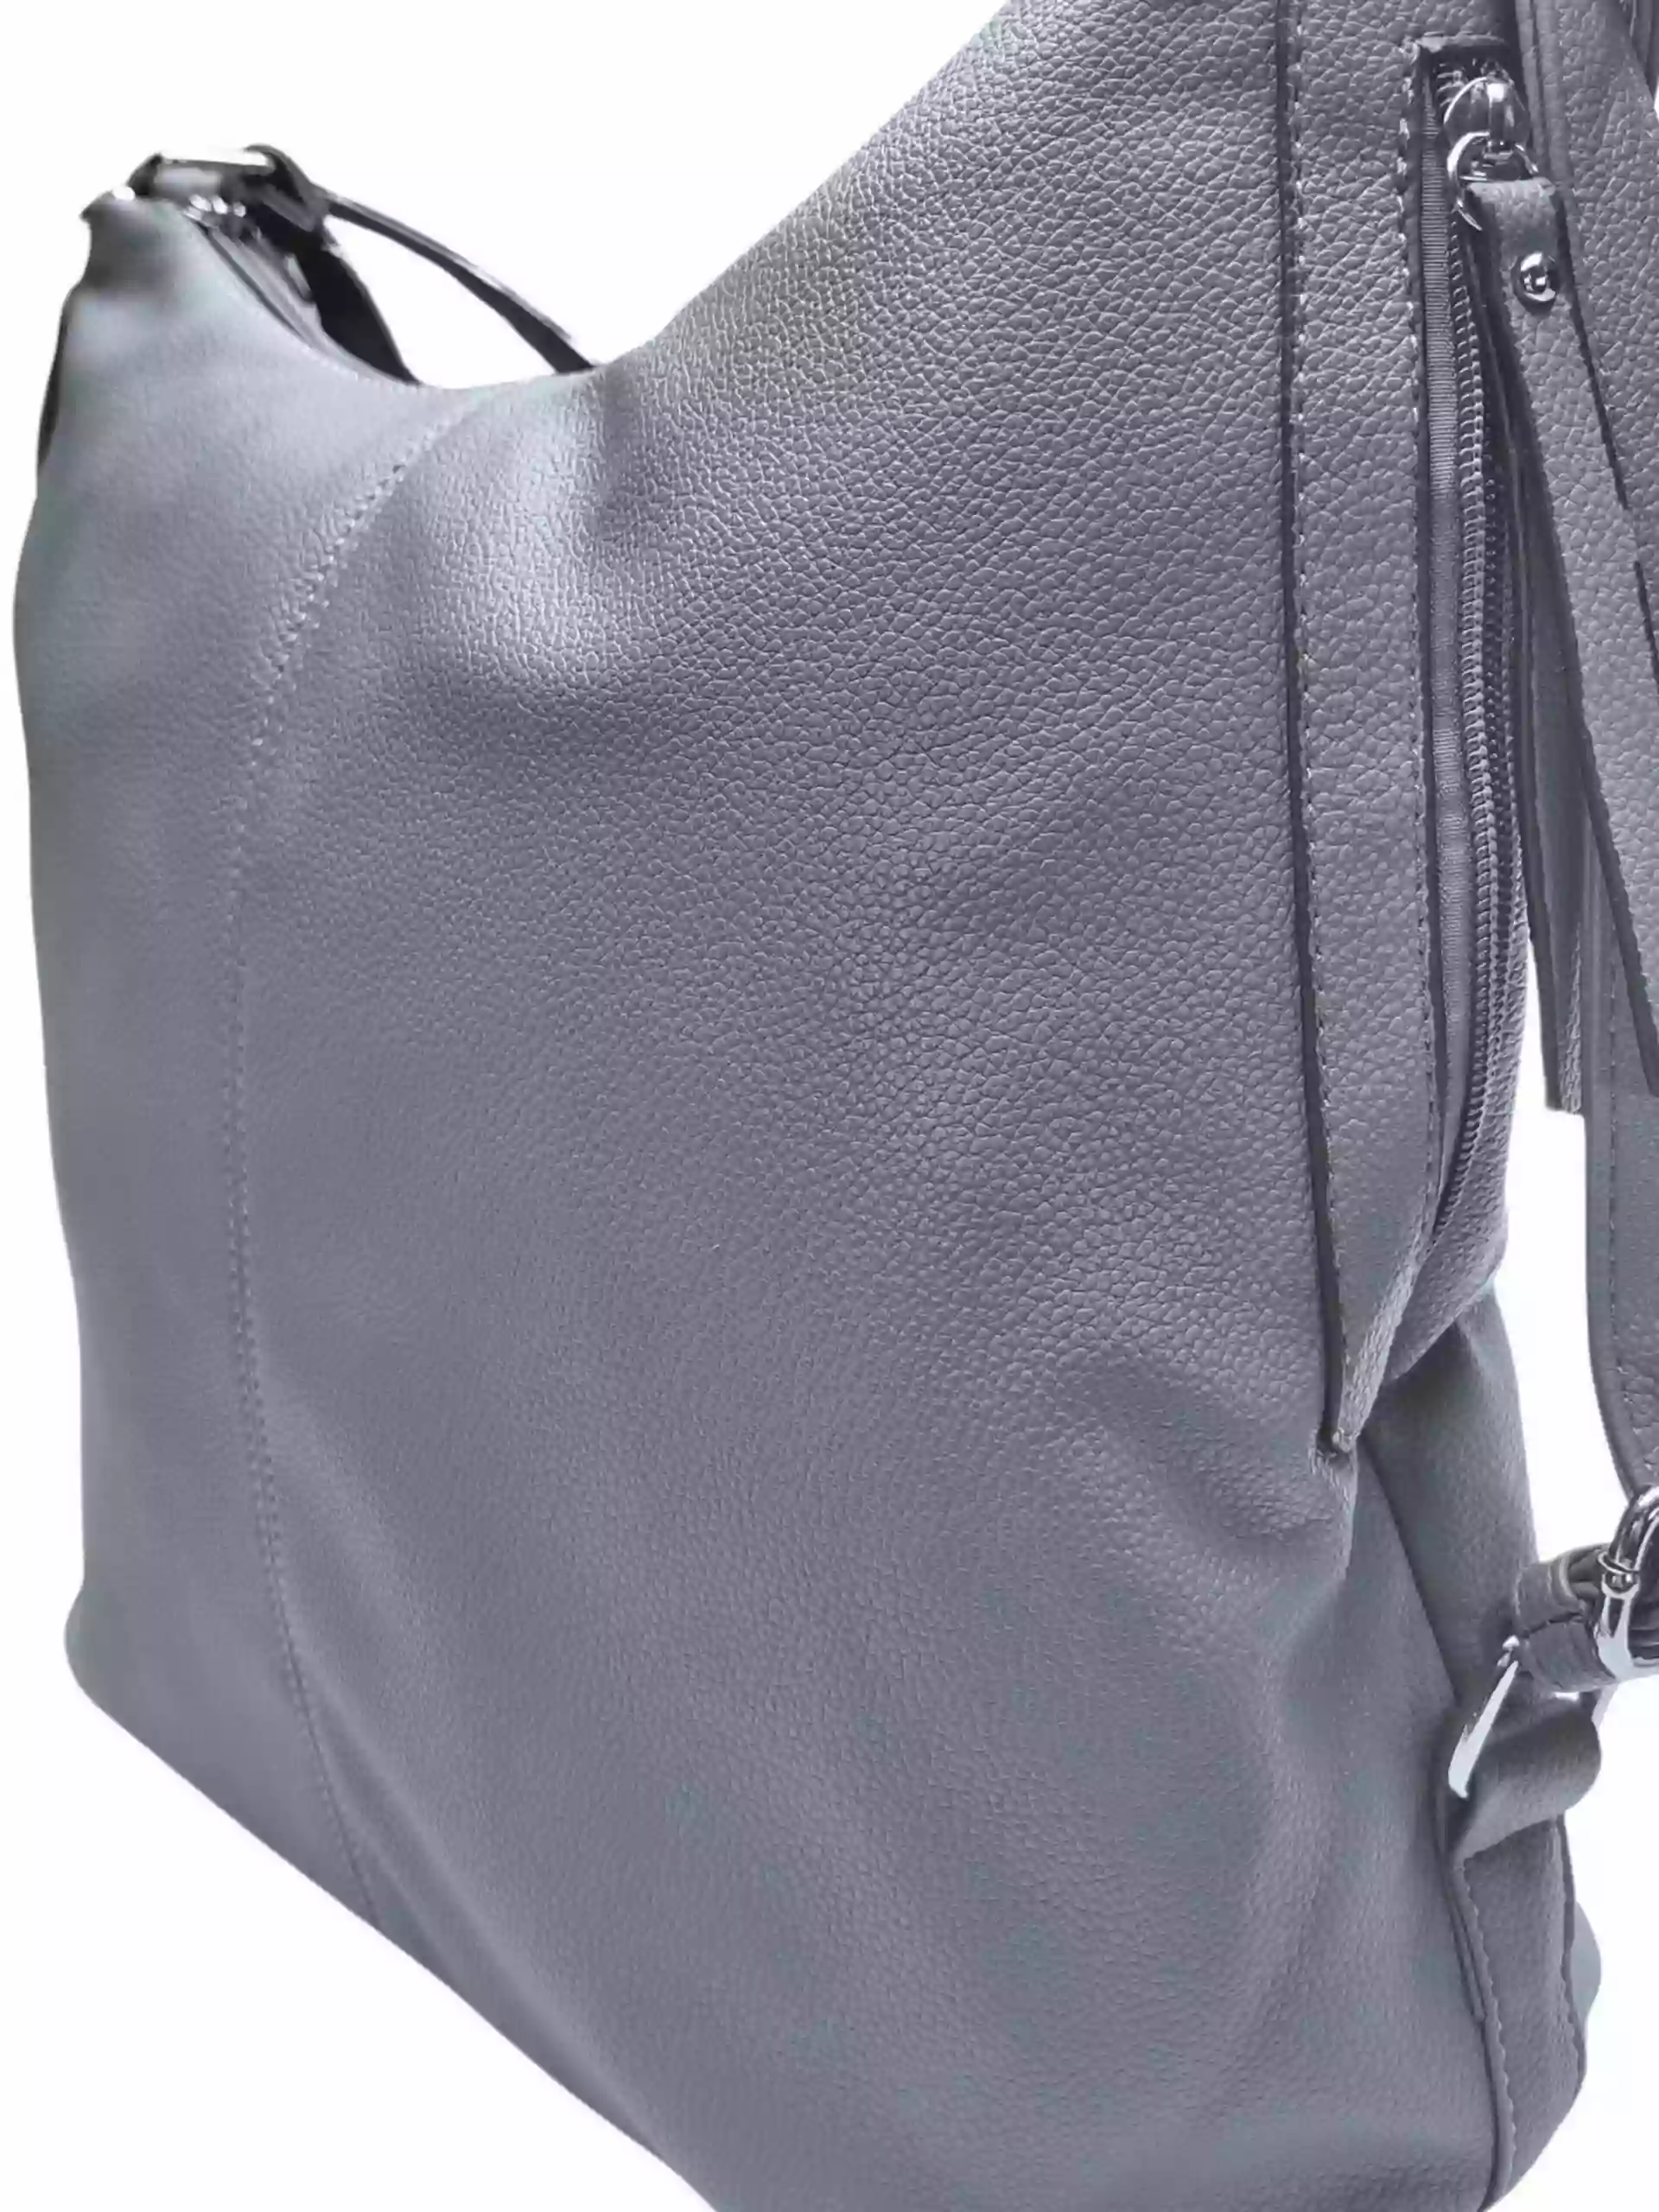 Velký středně šedý kabelko-batoh s bočními kapsami, Tapple, 9314-3, detail kabelko-batohu